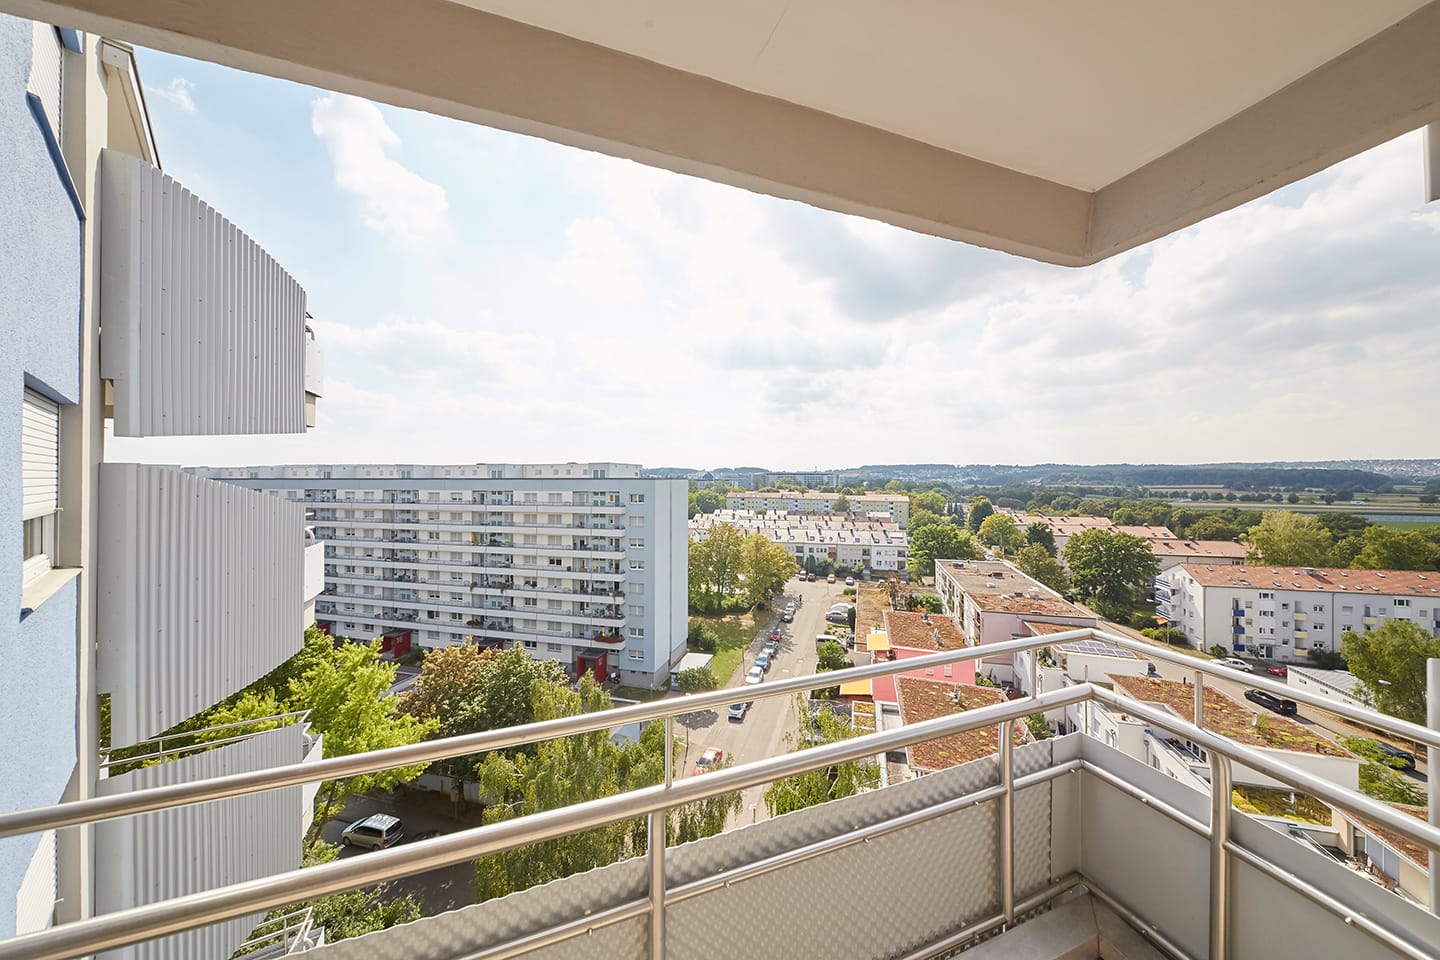 Mietwohnung Sautterweg: Balkon mit Aussicht